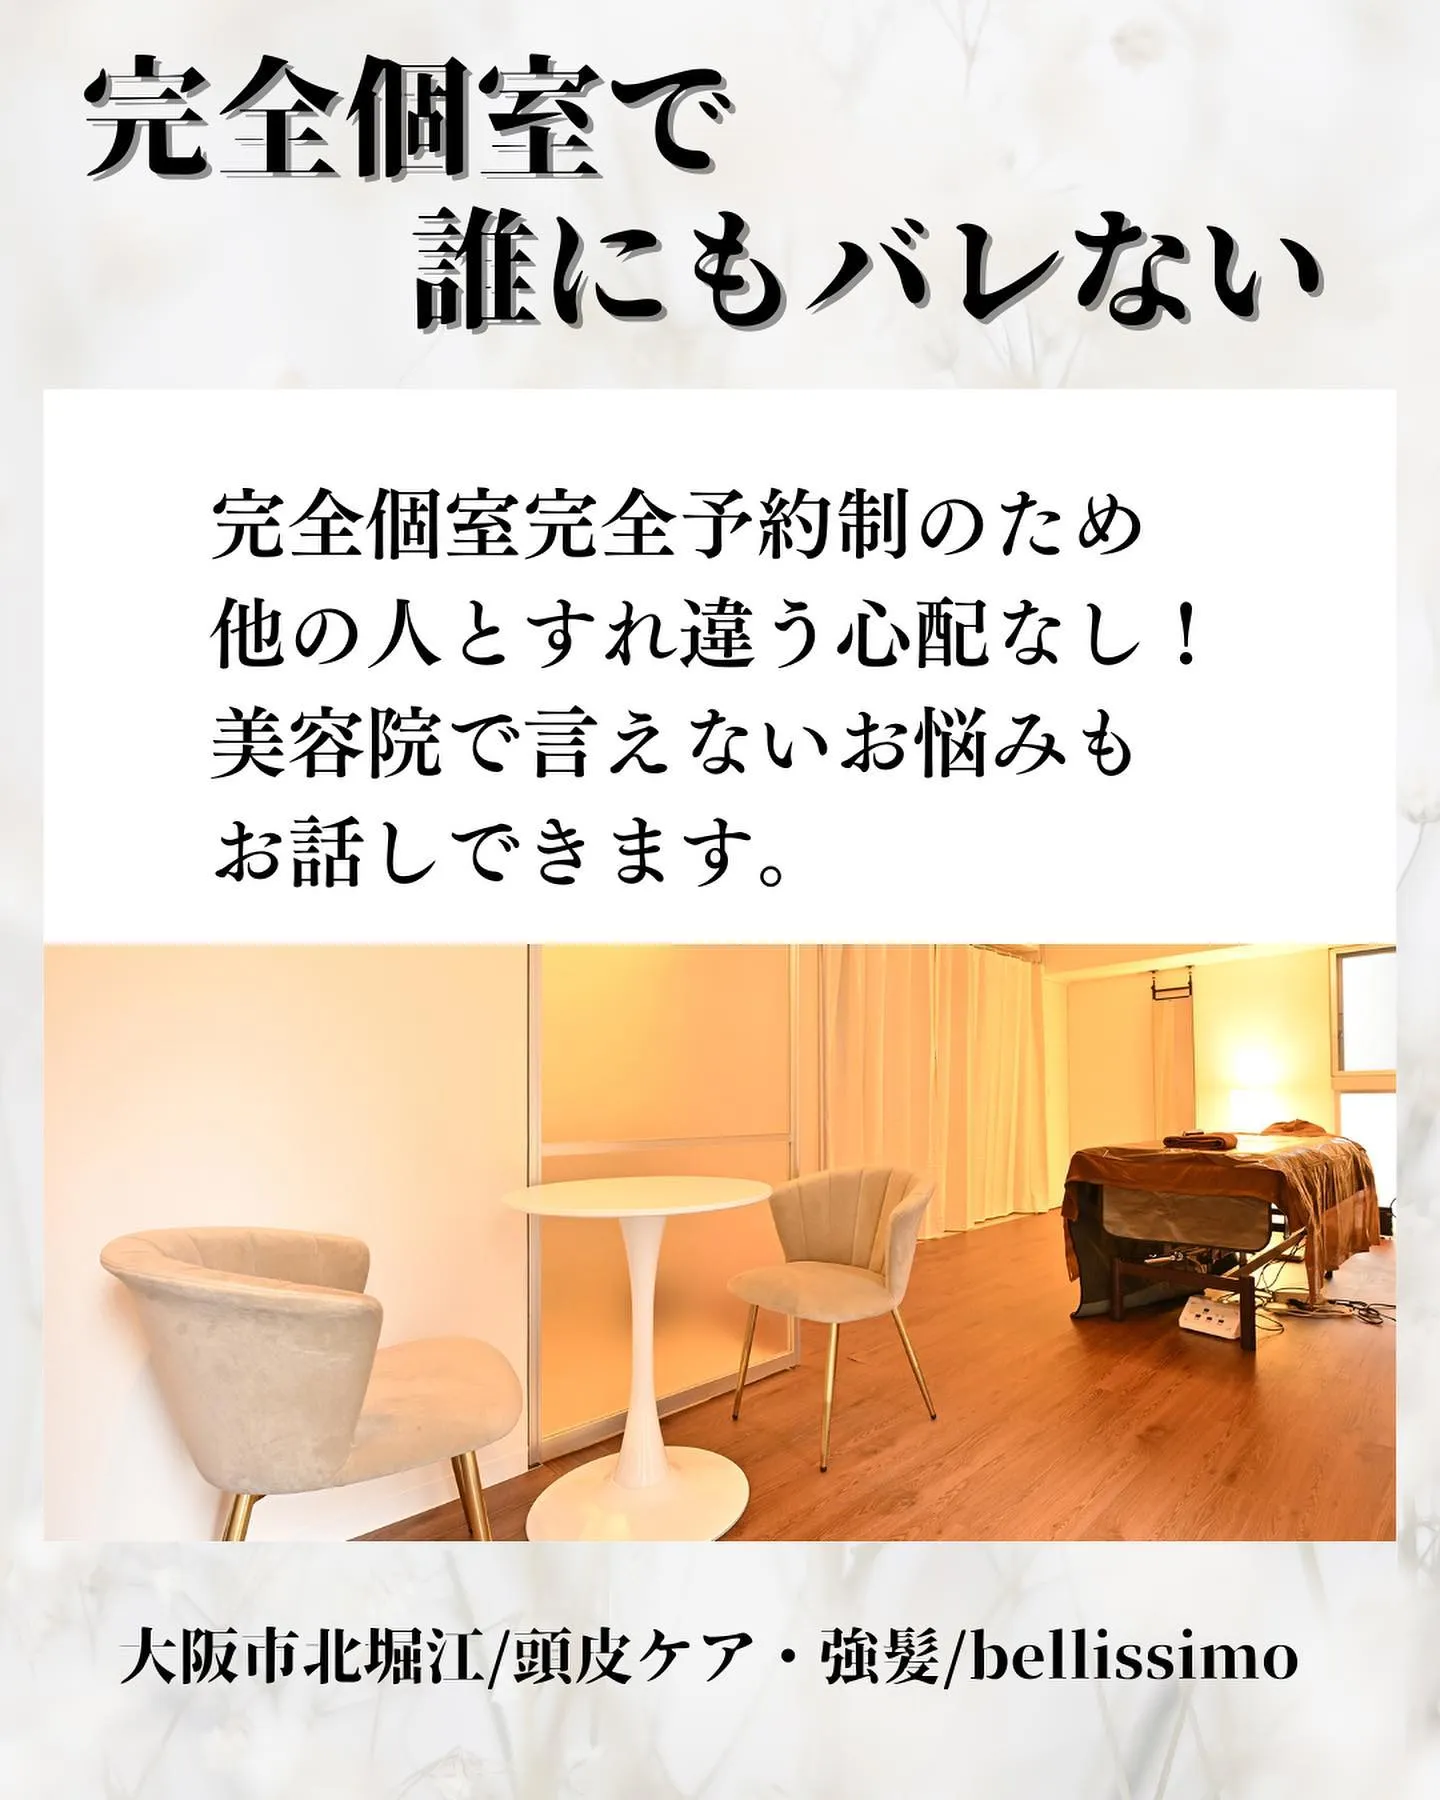 大阪市西区で頭皮ケアができる完全個室のエステサロン